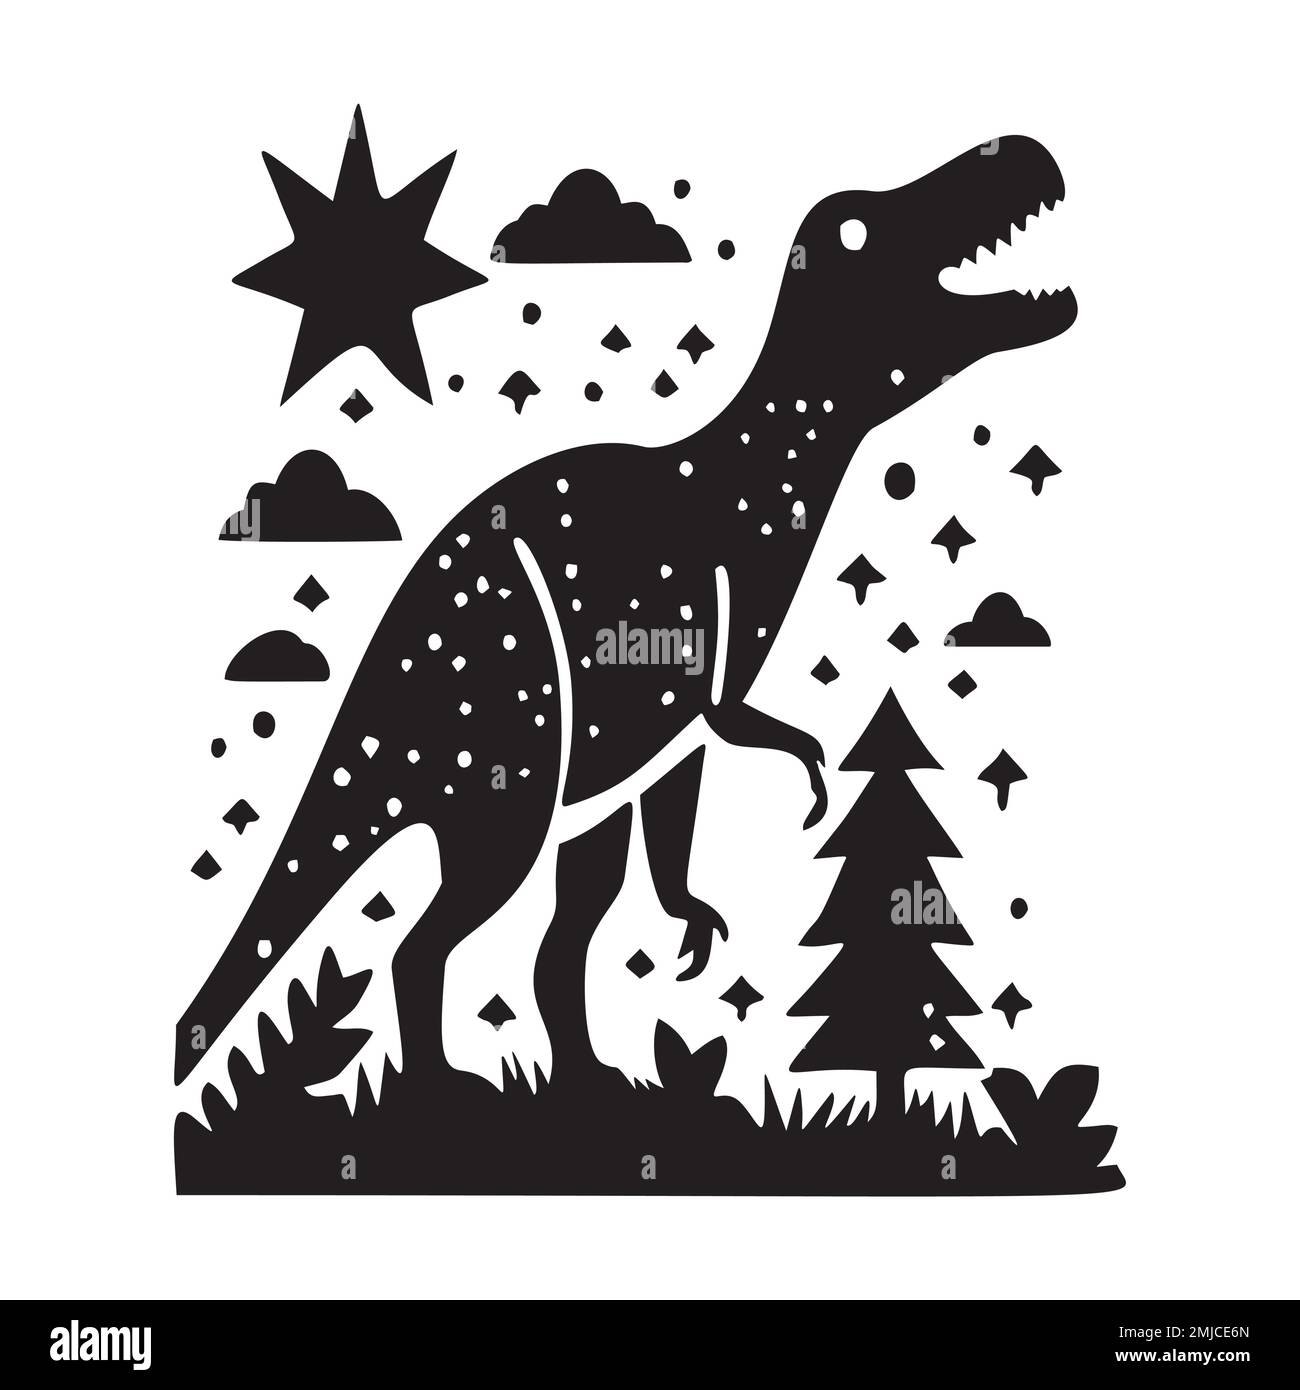 Süßes Dinosaurier-Vektormotiv für Kinder. Handgezeichnete kindliche Paleo-Reptilien-Illustration für skurrile Kunst. Stock Vektor